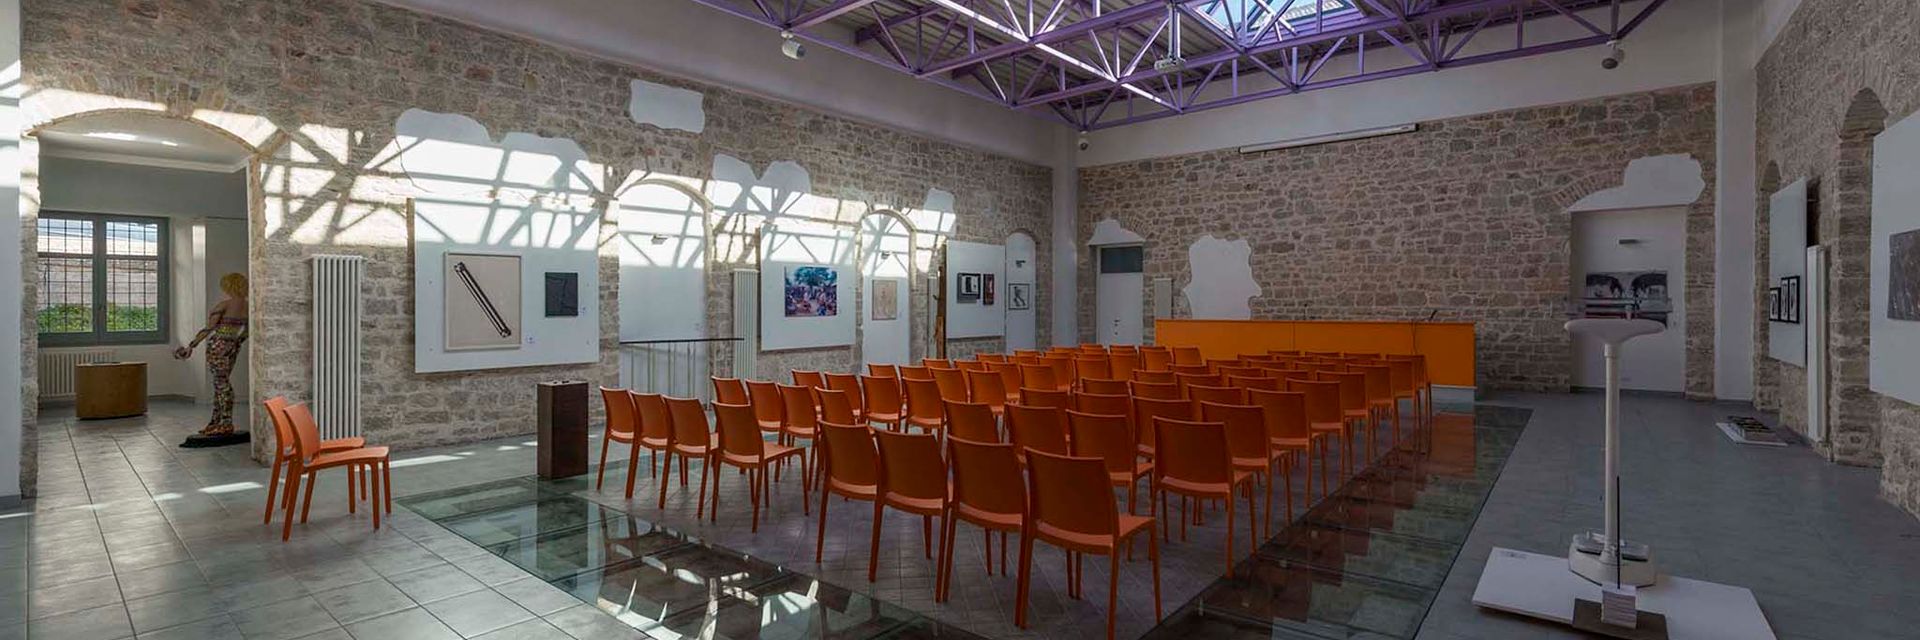 Galería Cívica de Arte Contemporáneo Franco Libertucci